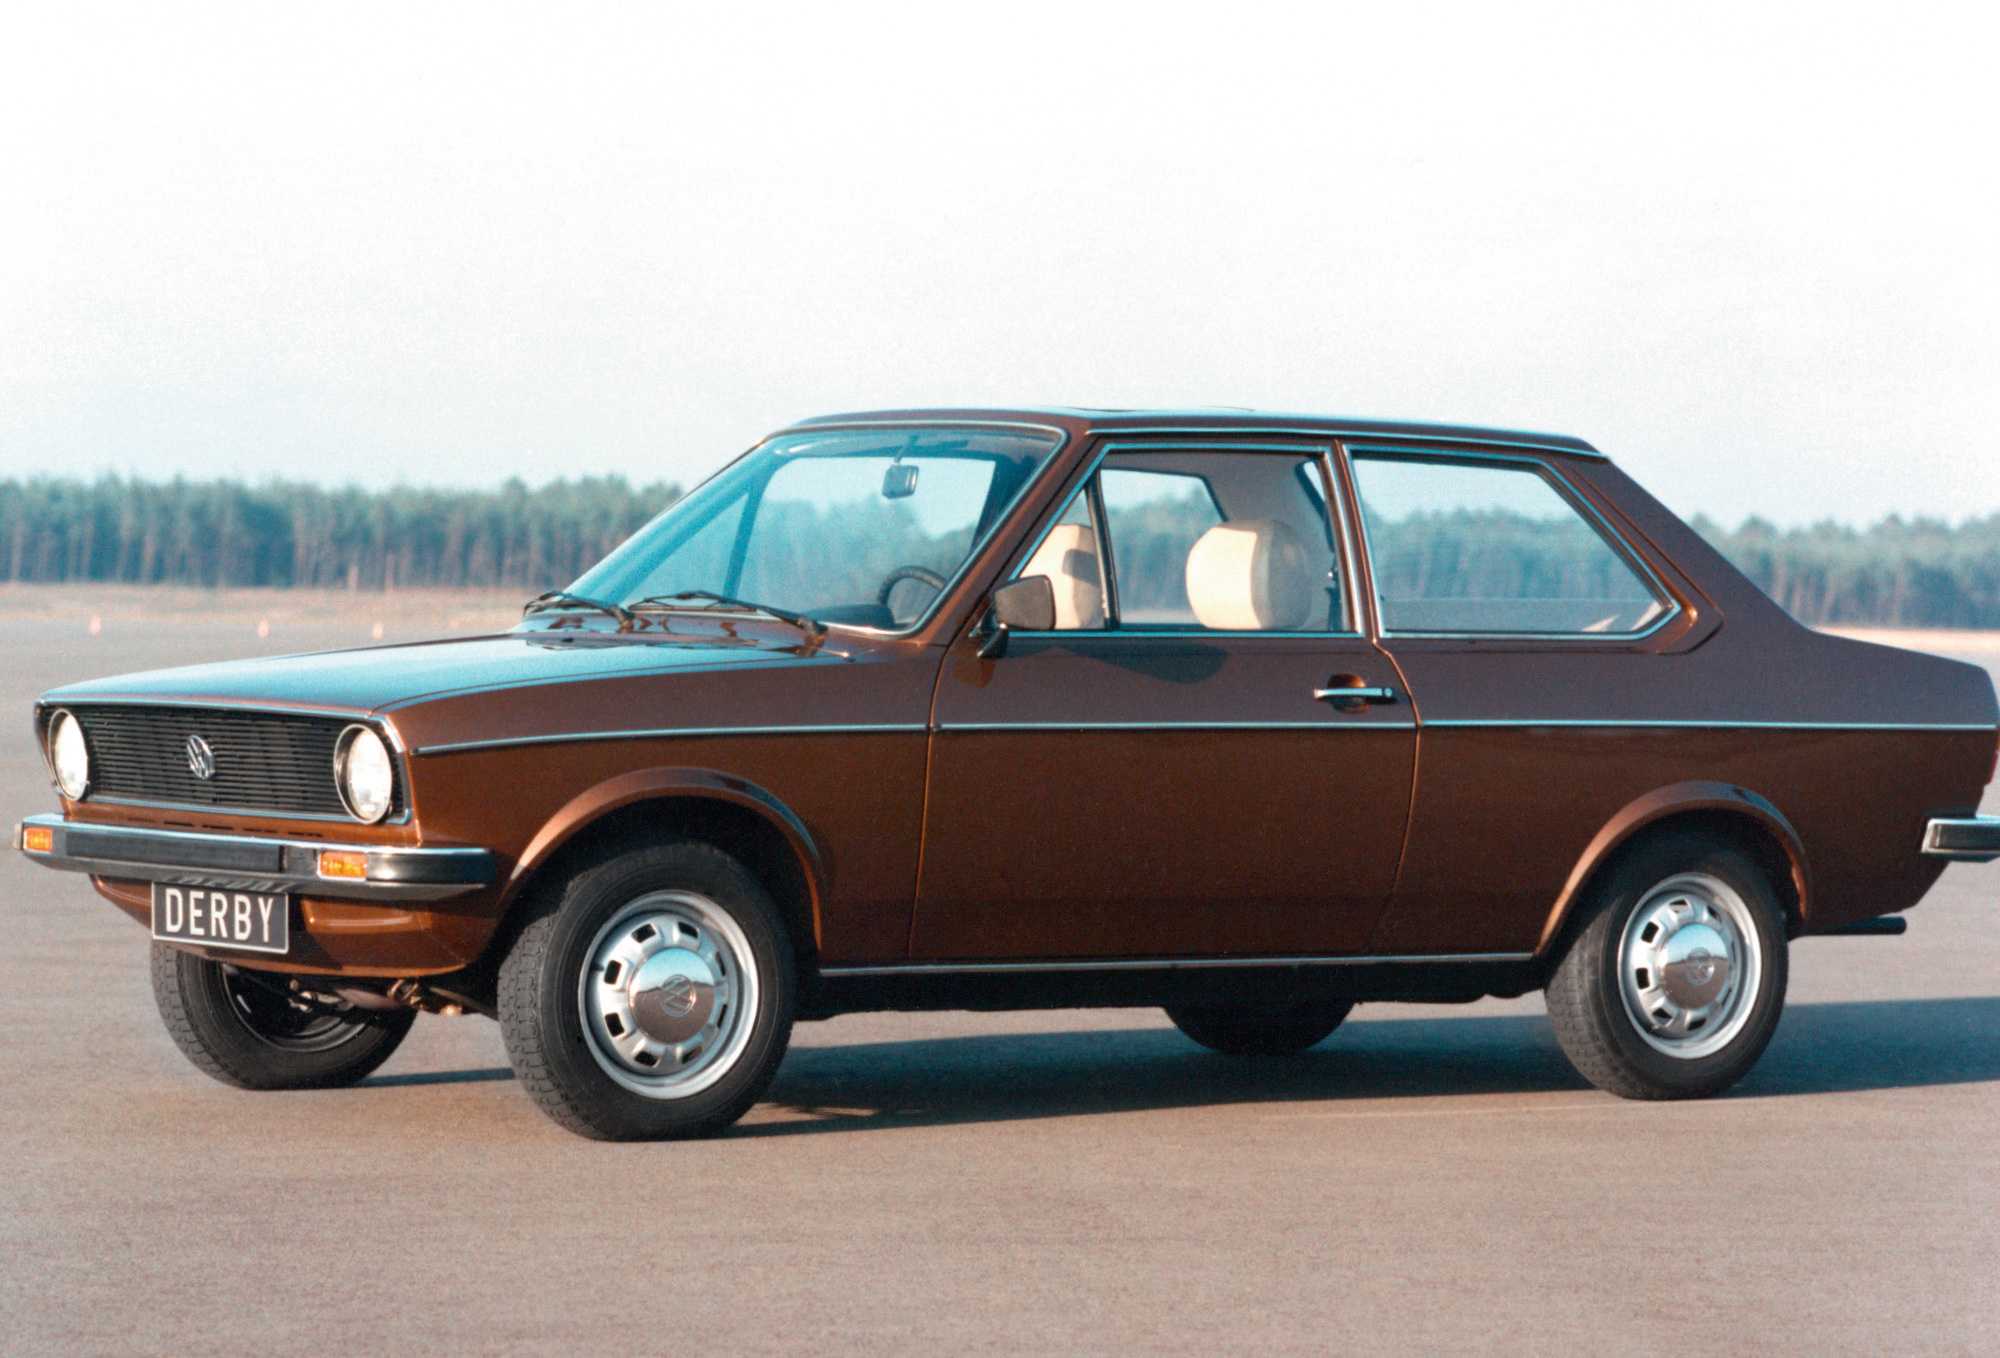 Первое поколение автомобилей. VW Derby mk1. Фольксваген дерби 1977. Фольксваген дерби 1. Фольксваген гольф 1977.